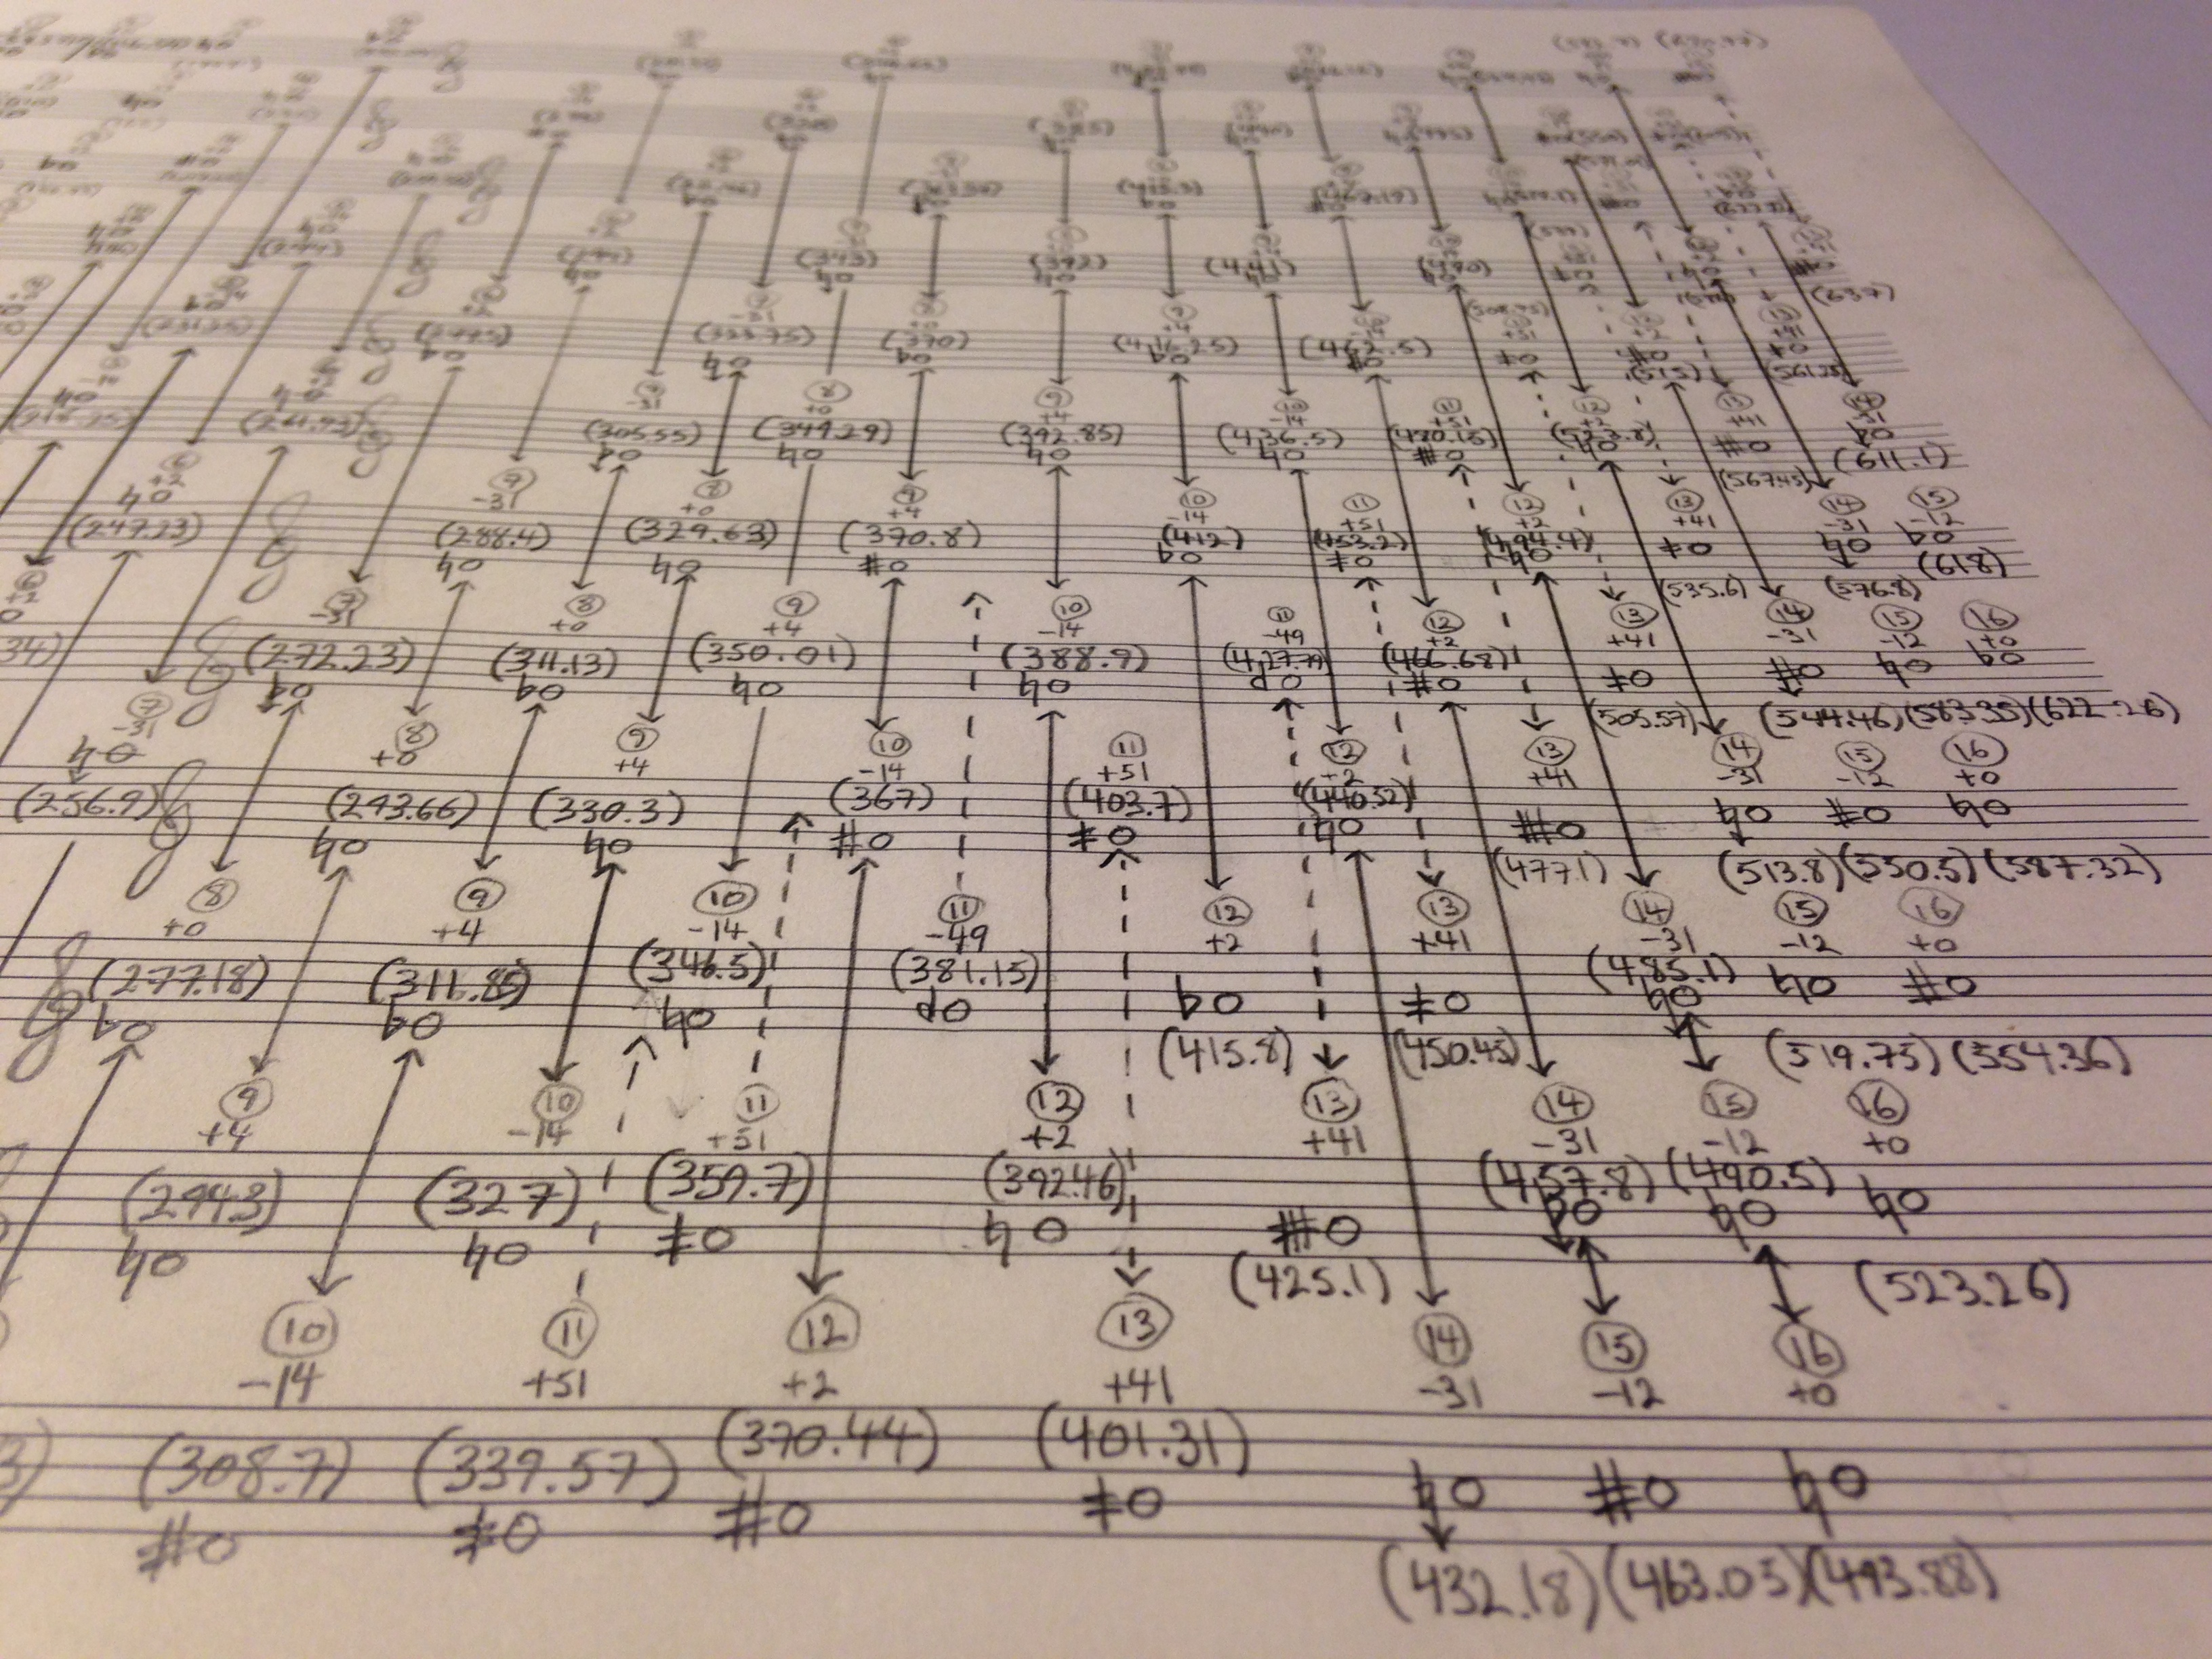 2014-double-concerto-sketches-horn-partials-close